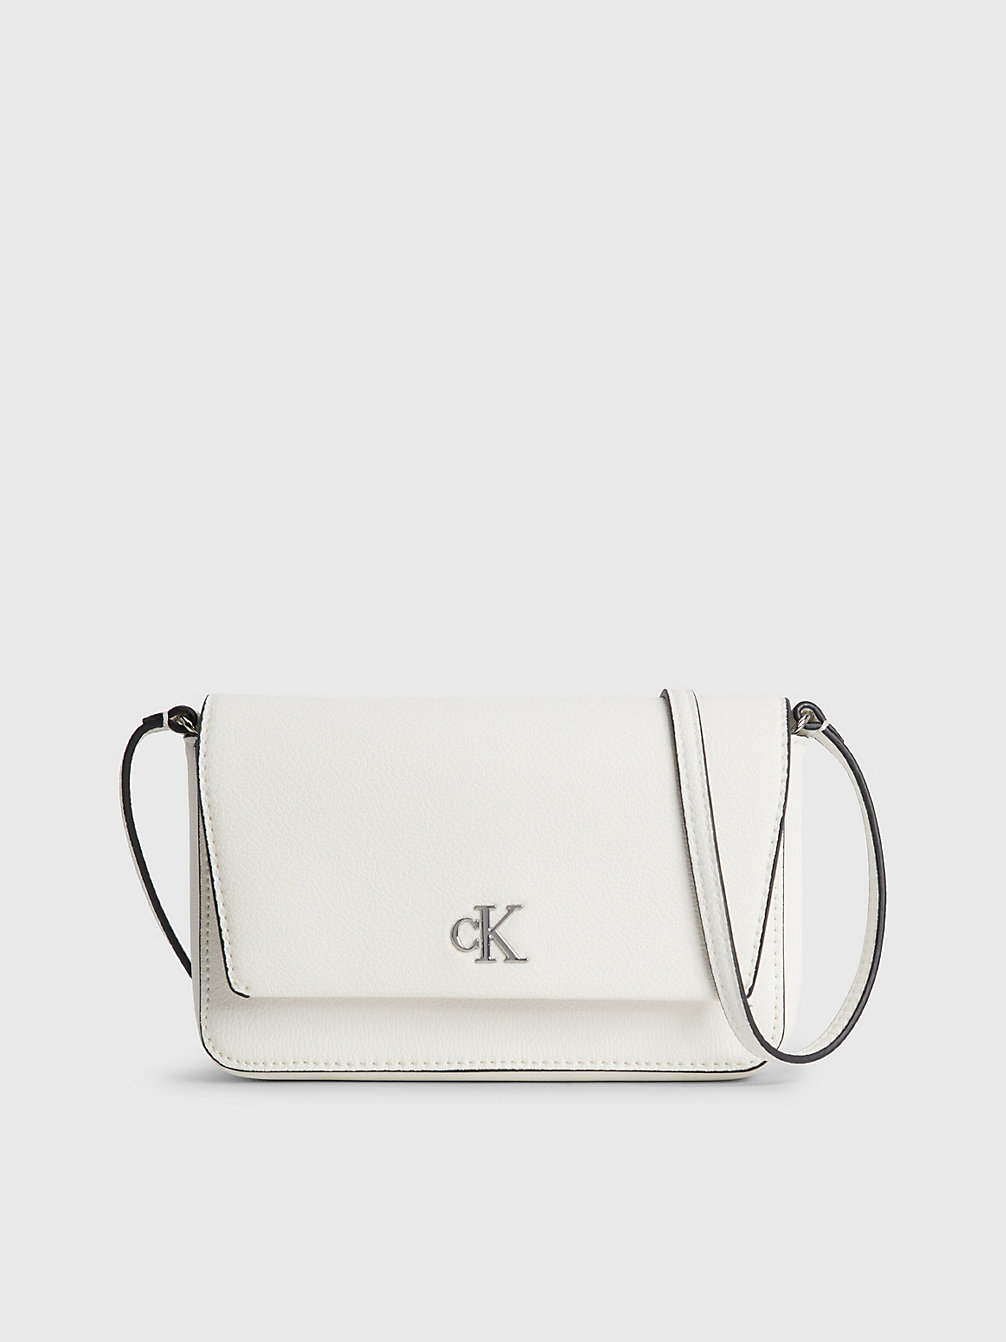 BRIGHT WHITE Portemonnaie-Tasche Aus Recyceltem Material undefined Damen Calvin Klein